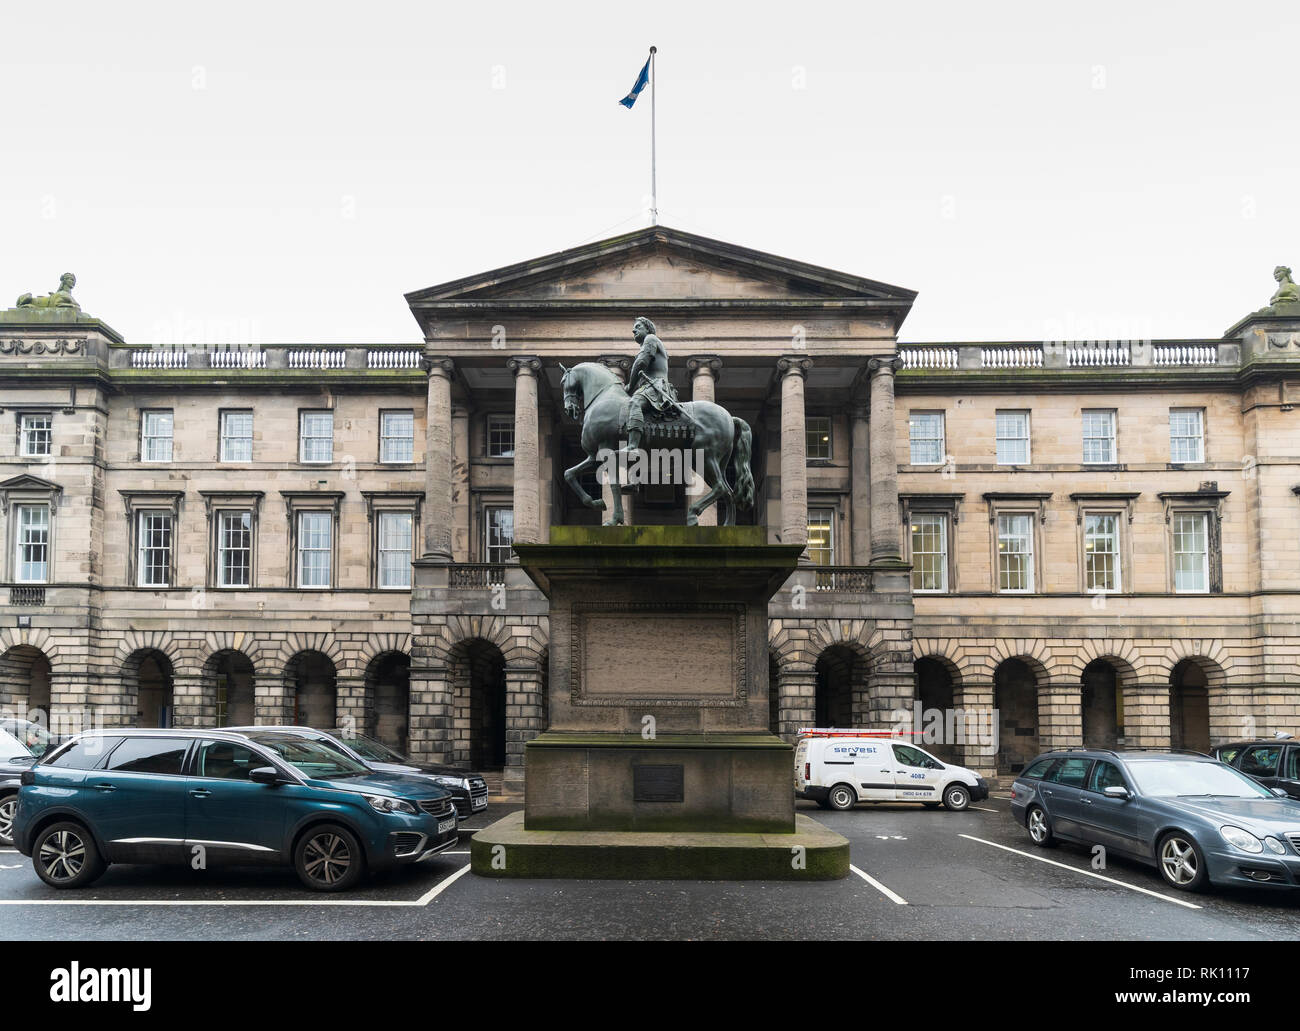 Vue de la place du Parlement et de la Cour de session dans les bâtiments de la vieille ville d'Édimbourg Banque D'Images